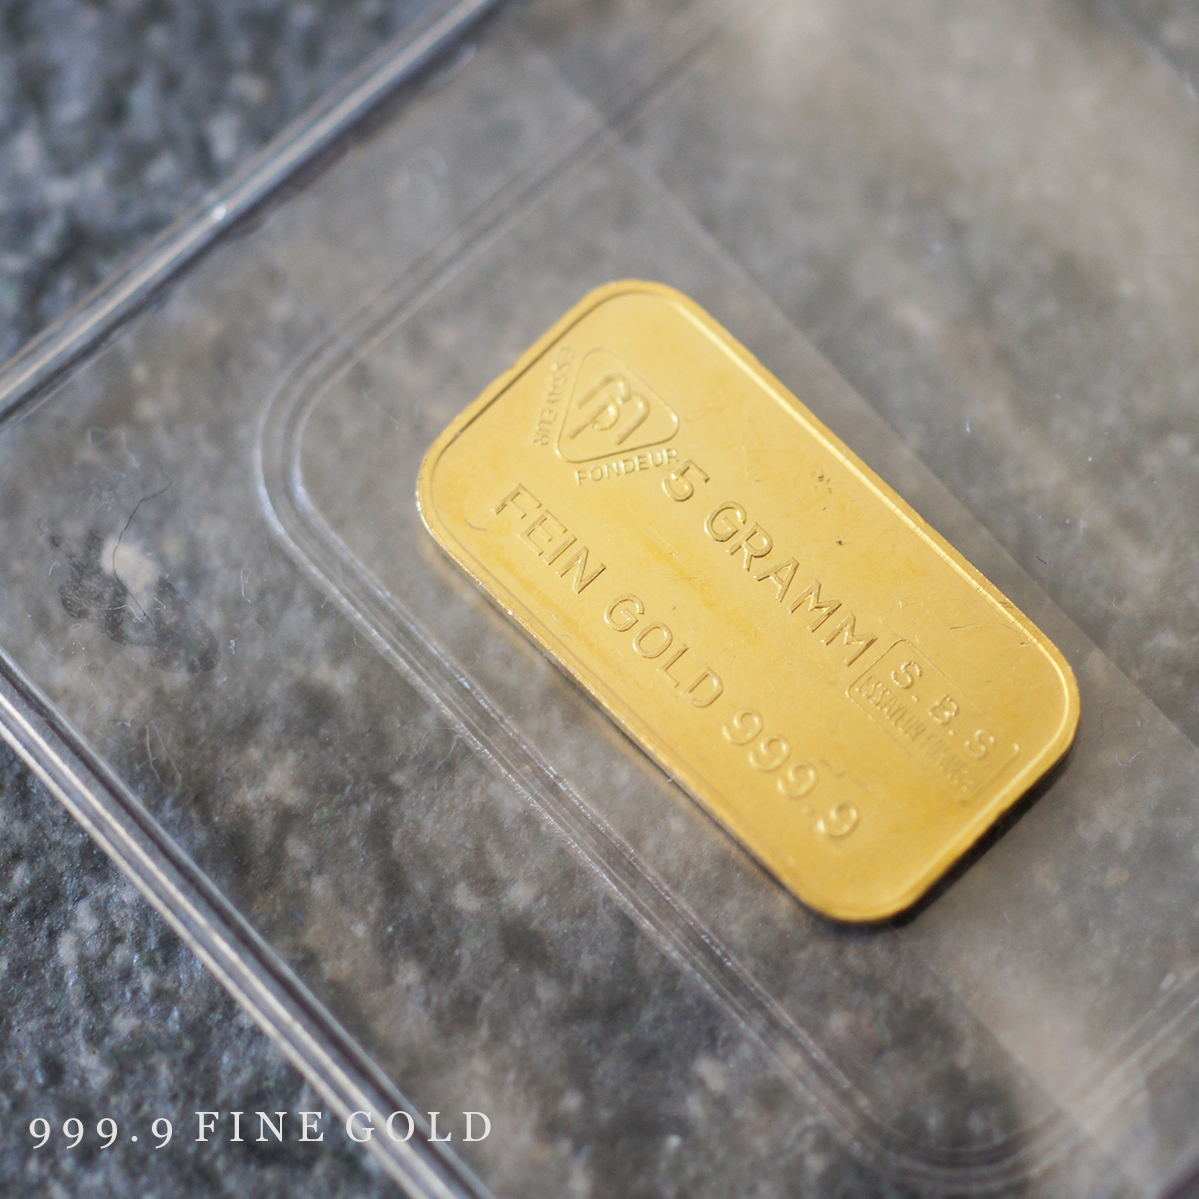 K24 Швейцарский банк Schweizeriskher Bankverein Ingot 5G 999,9 Fine Gold 24K Gold Gold Gold Gold Gold